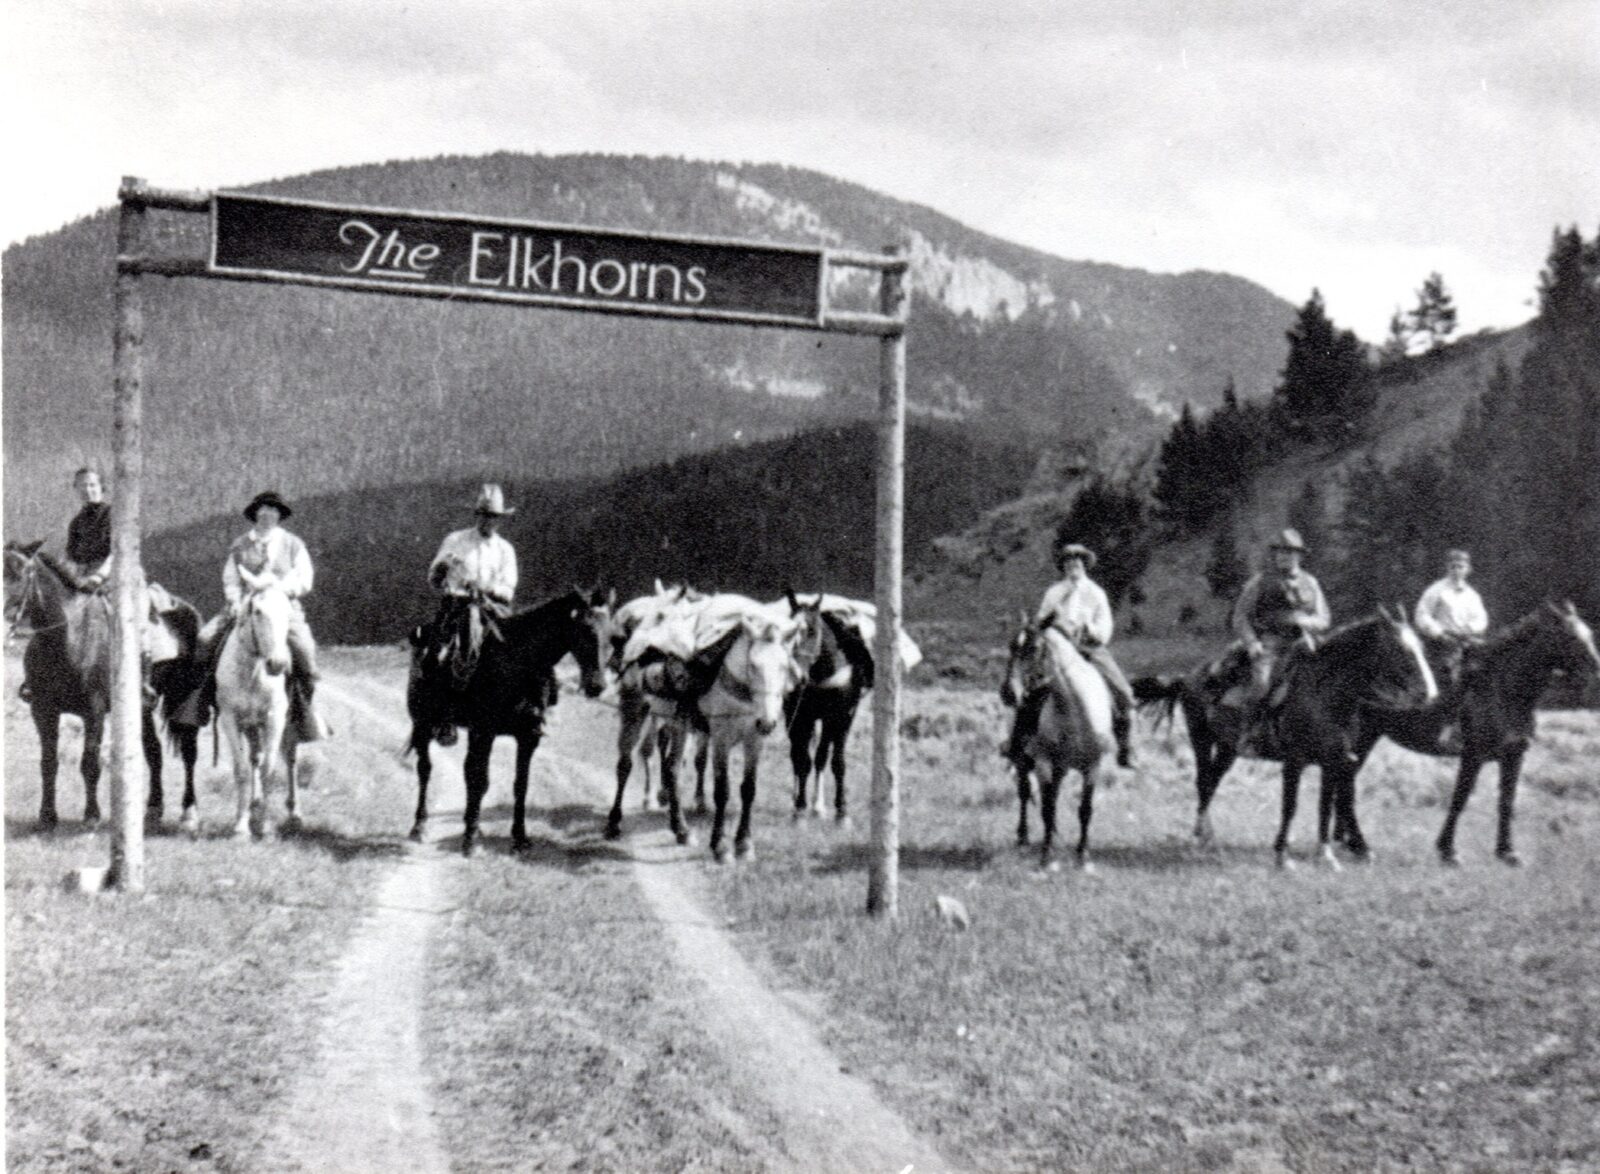 elkhorns-ranch-history